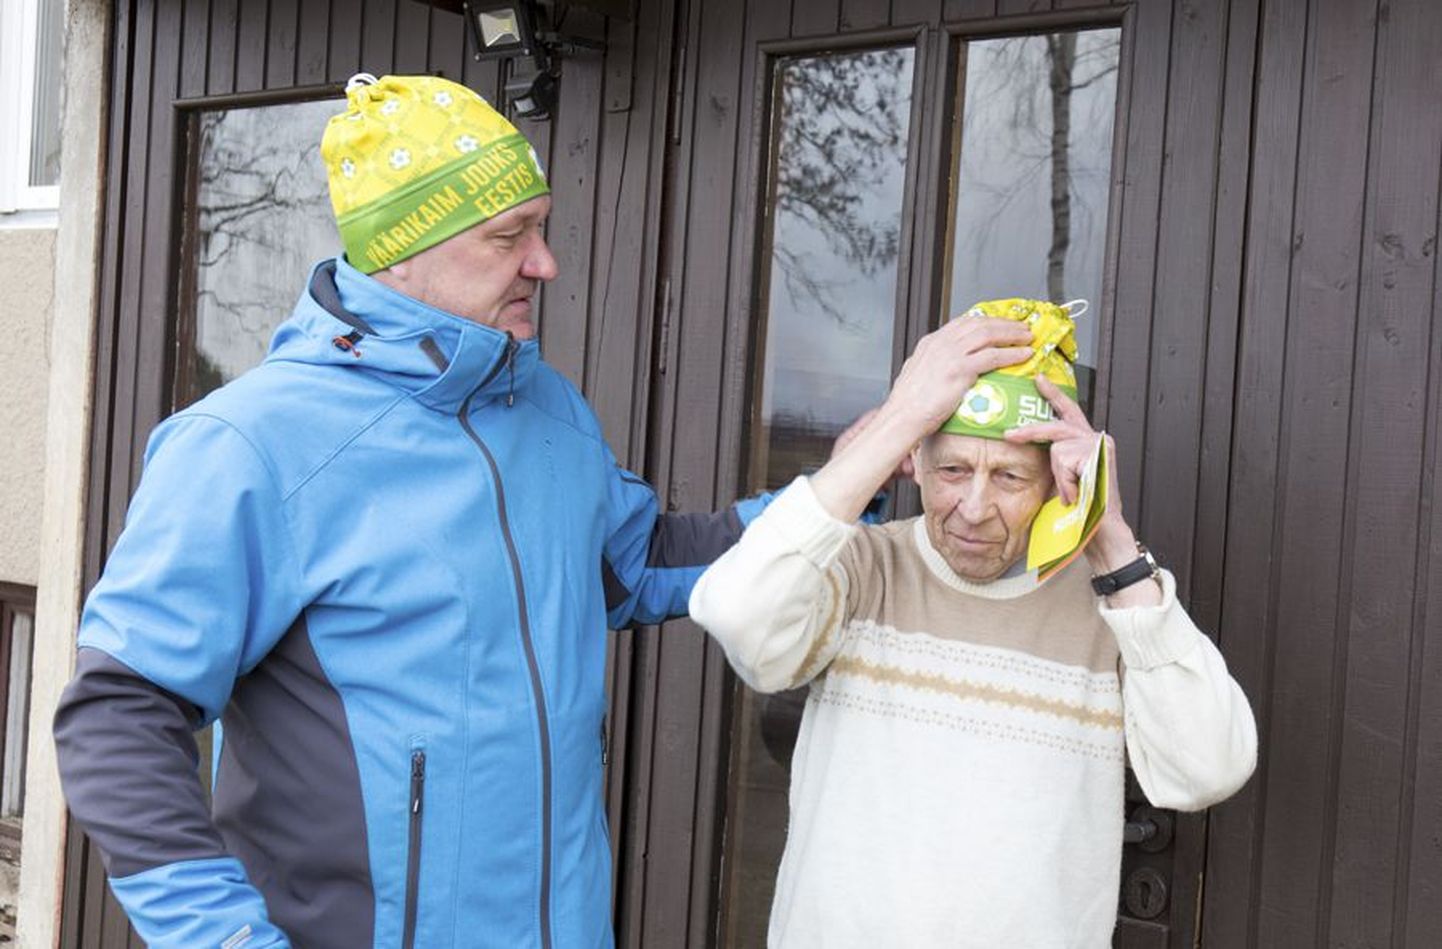 Ümber Viljandi järve jooksu peakorraldaja Mati Jürisson andis eile Benno Viirandile lisaks kutsele mütsi, mille soovitas pähe panna, kui ta nõustub sõnumiga, et Viljandi jooks on Eesti väärikaim.